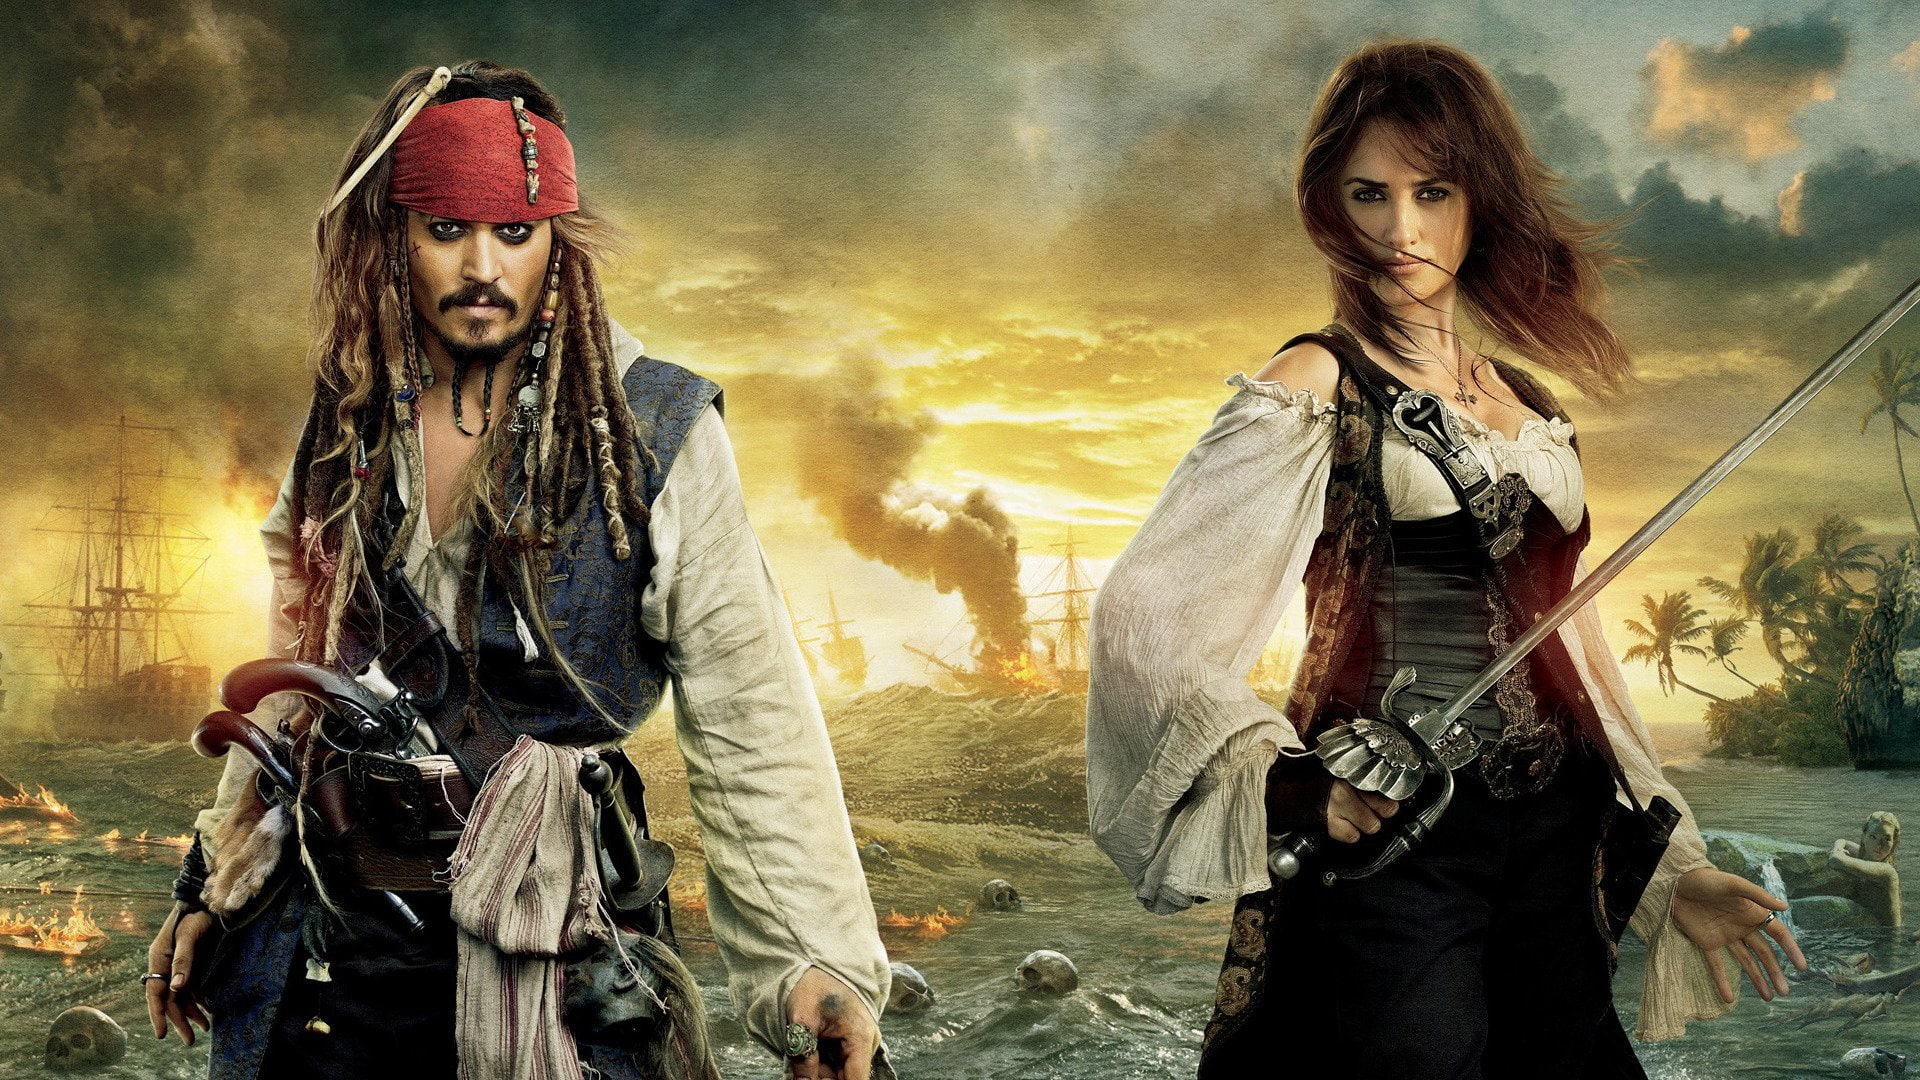 Pirates Of The Caribbean, Pirates of the Caribbean: On Stranger Tides